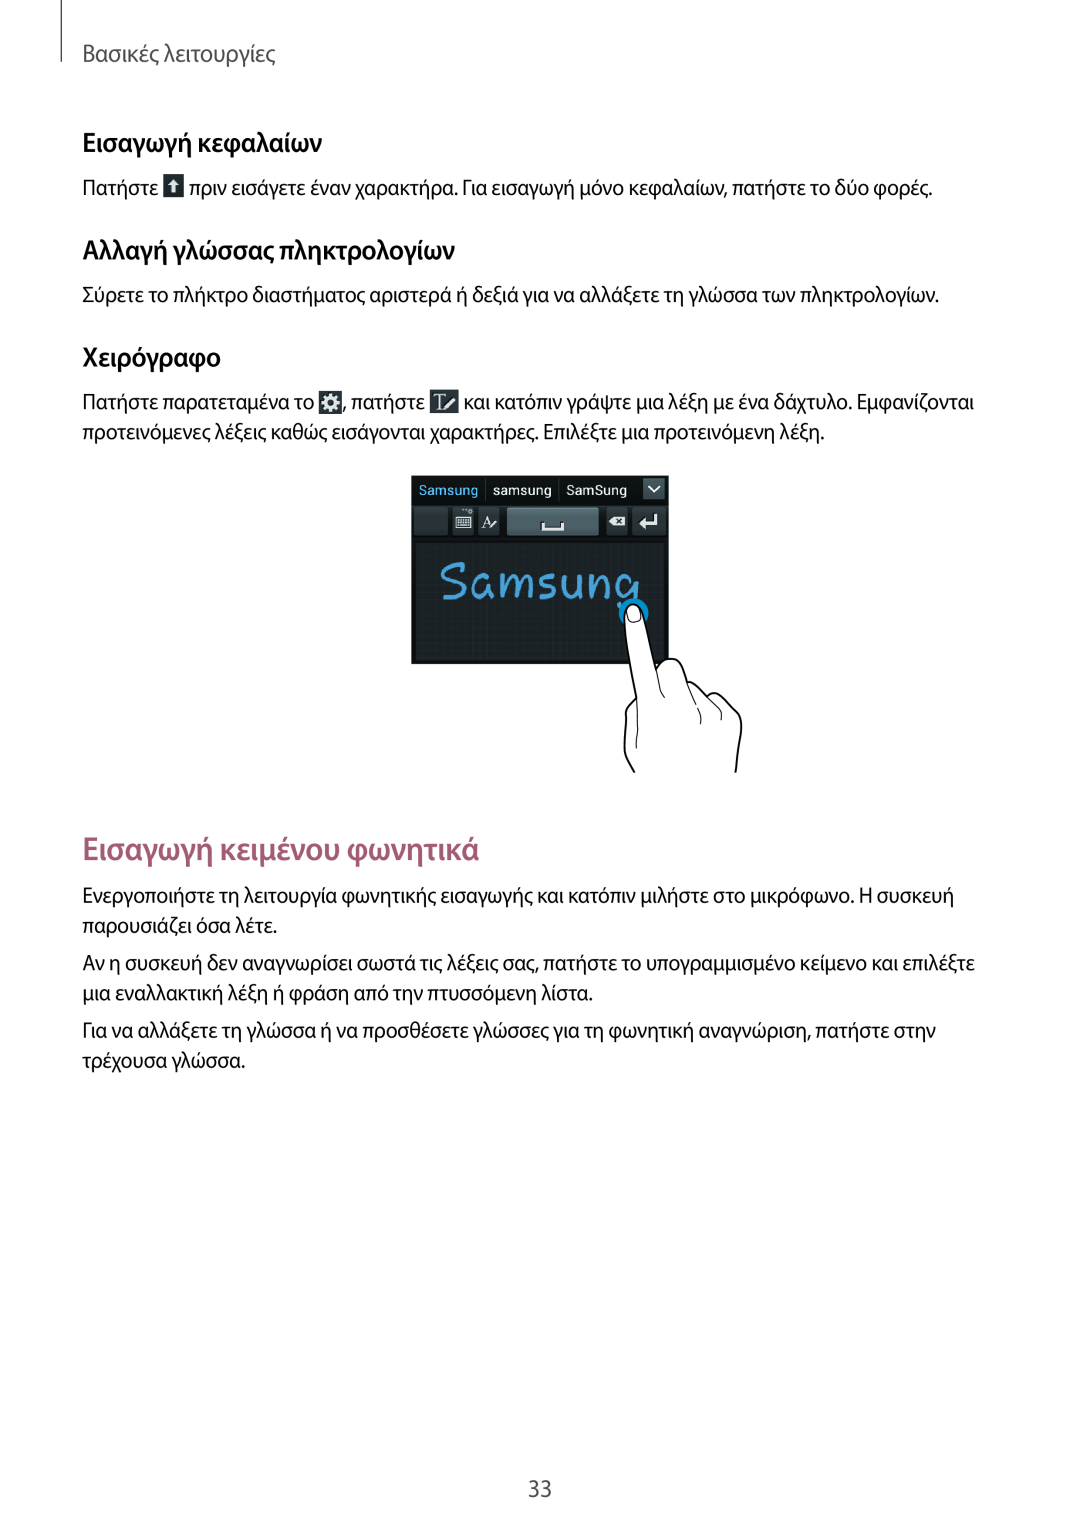 Samsung GT-S7710TAAVGR manual Εισαγωγή κειμένου φωνητικά, Εισαγωγή κεφαλαίων, Αλλαγή γλώσσας πληκτρολογίων, Χειρόγραφο 